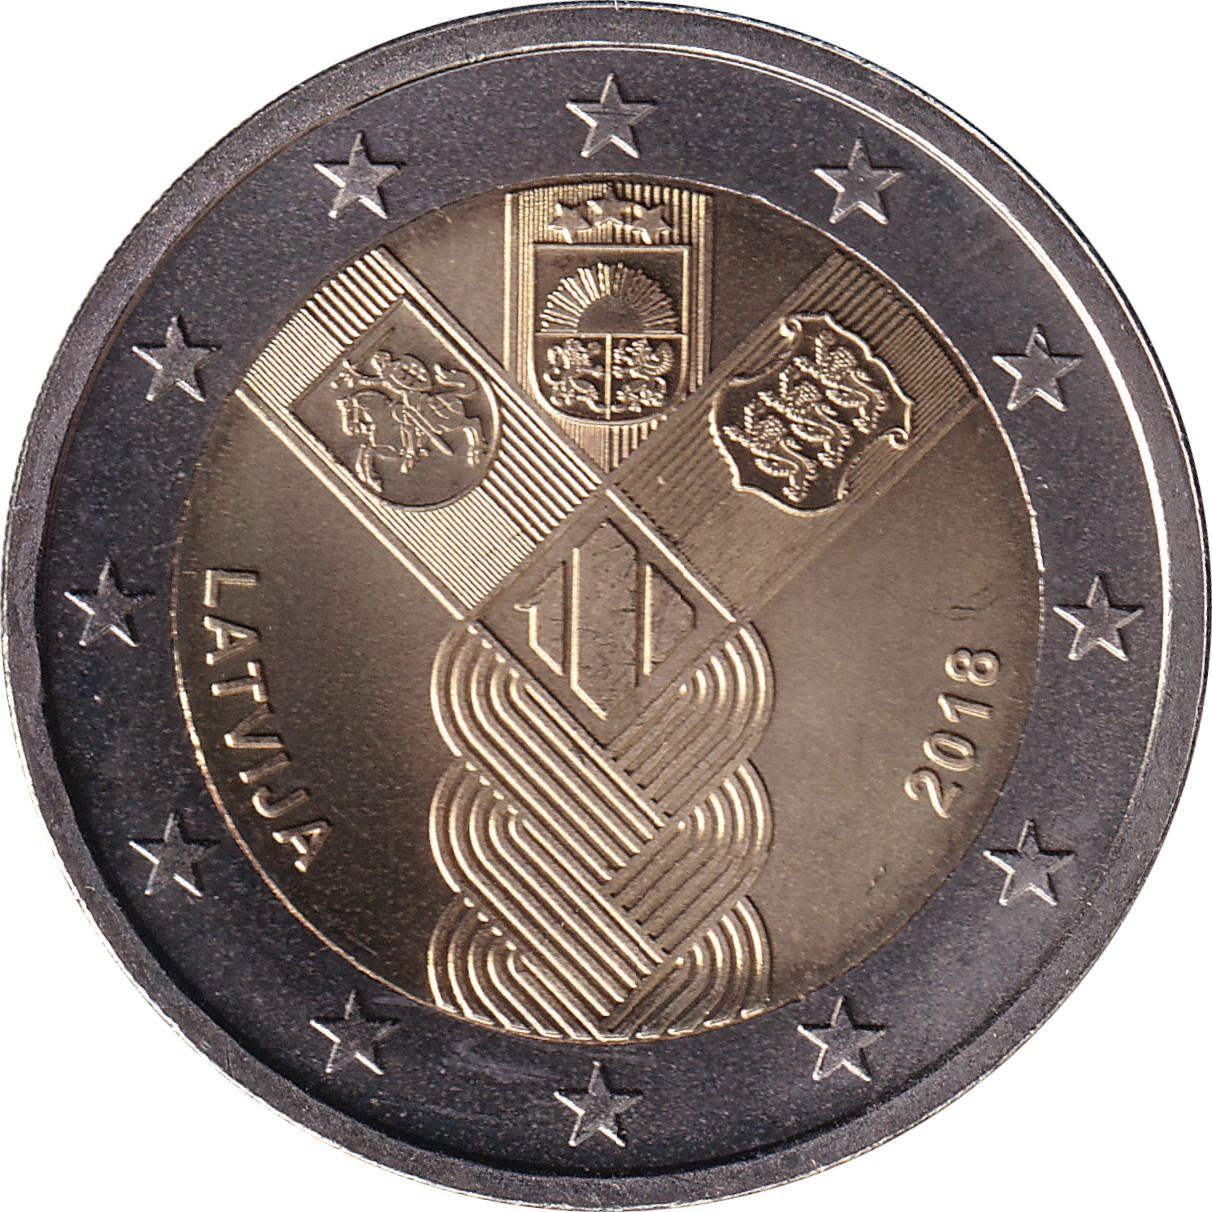 2 euro - Indépendance des Etats Baltes - 100 years